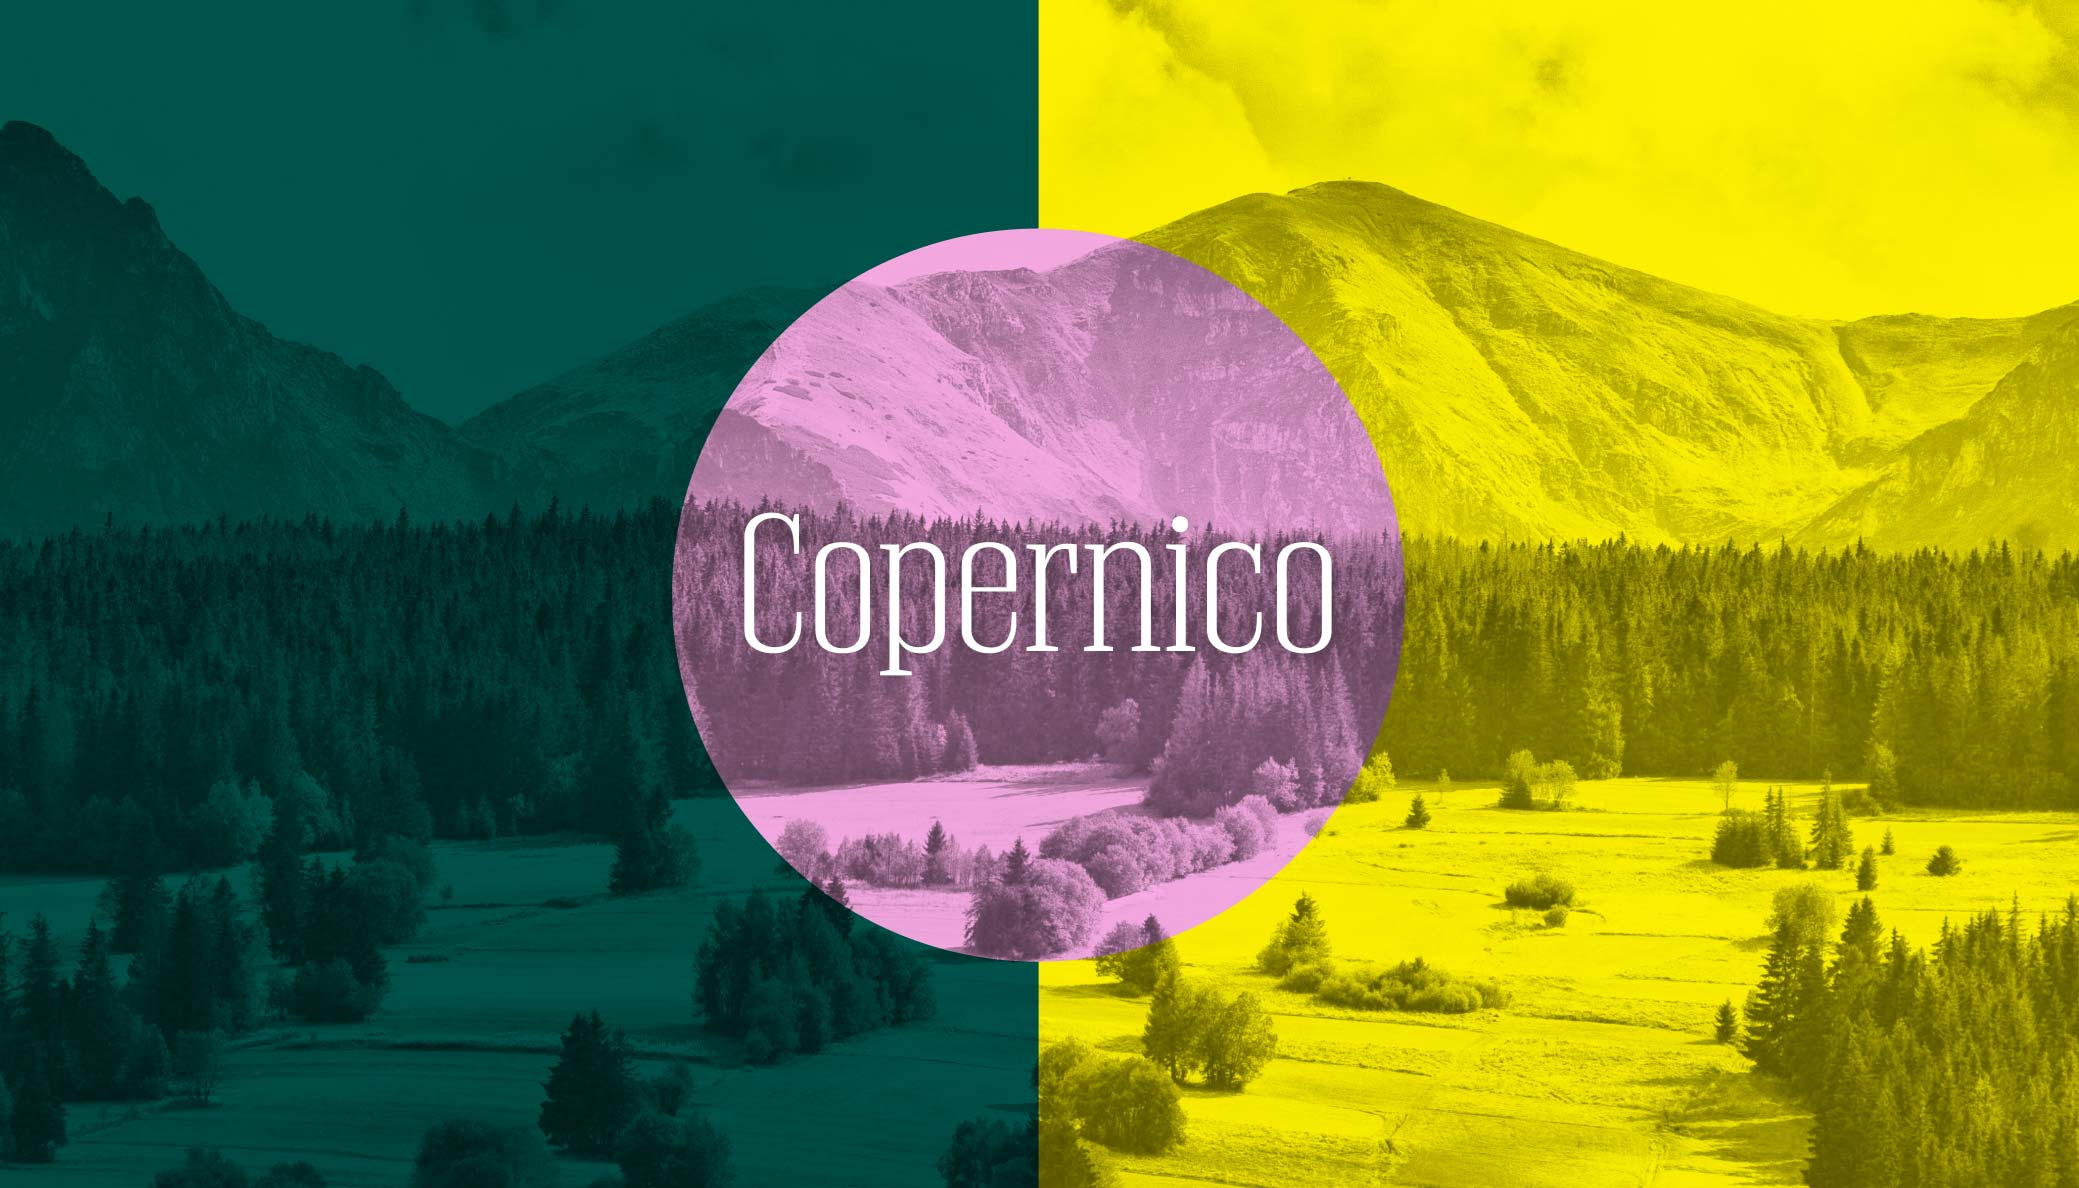 Schriftzug "Copernico" mit einer bergigen Landschaft im Hintergrund